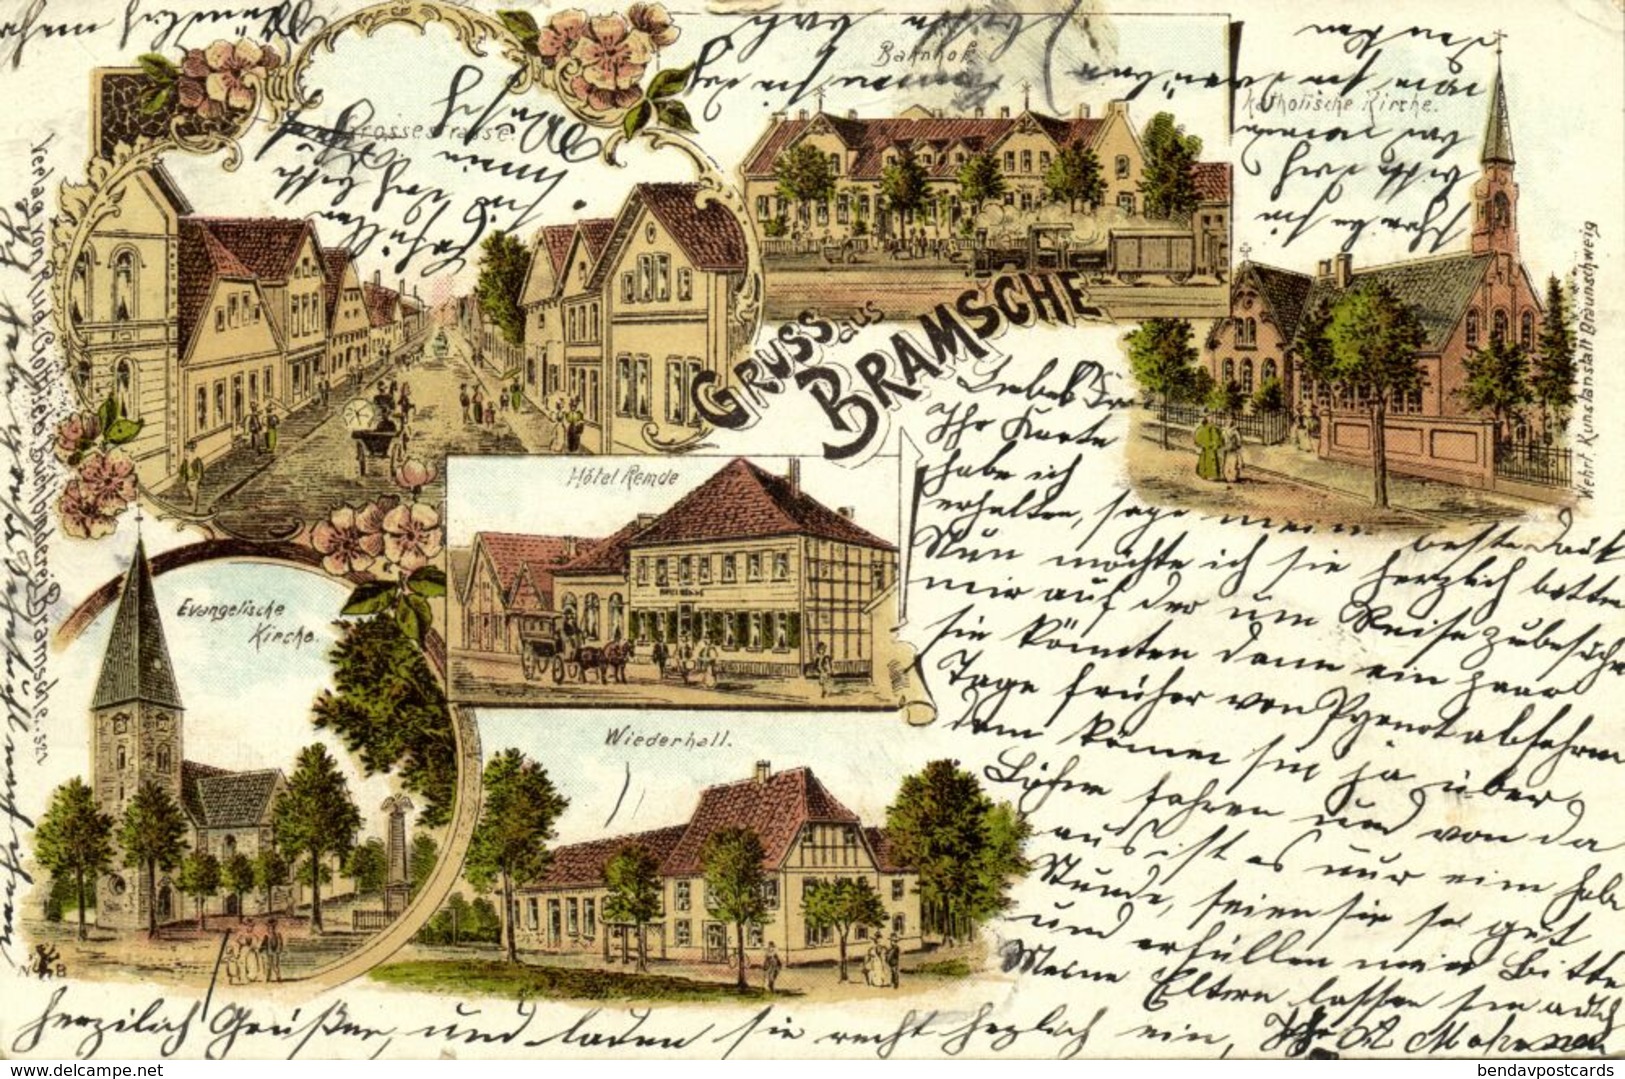 BRAMSCHE, Mehrbildkarte, Bahnhof, Grossestrasse, Hotel Remde, Wiederhall, Kath. Kirche (1899) Litho-AK - Bramsche